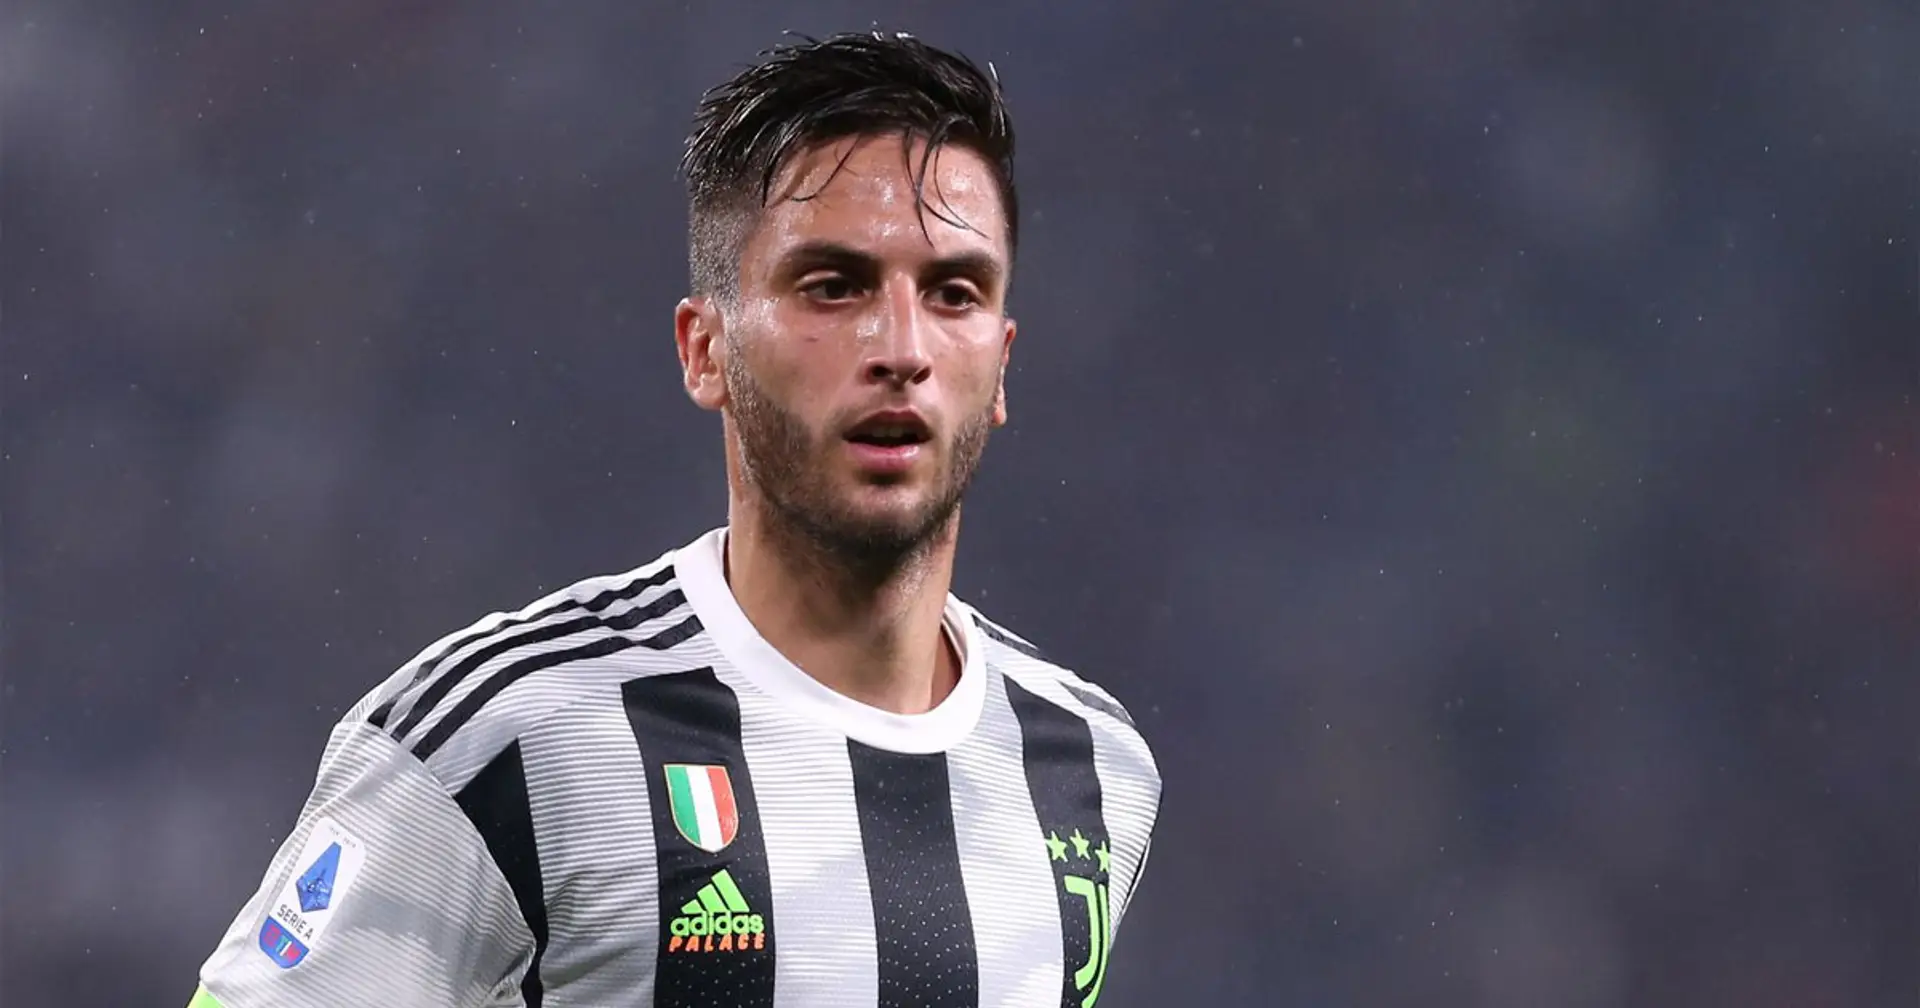 Arriva l'offerta dell'Aston Villa per Bentancur: Juventus non convinta per un motivo